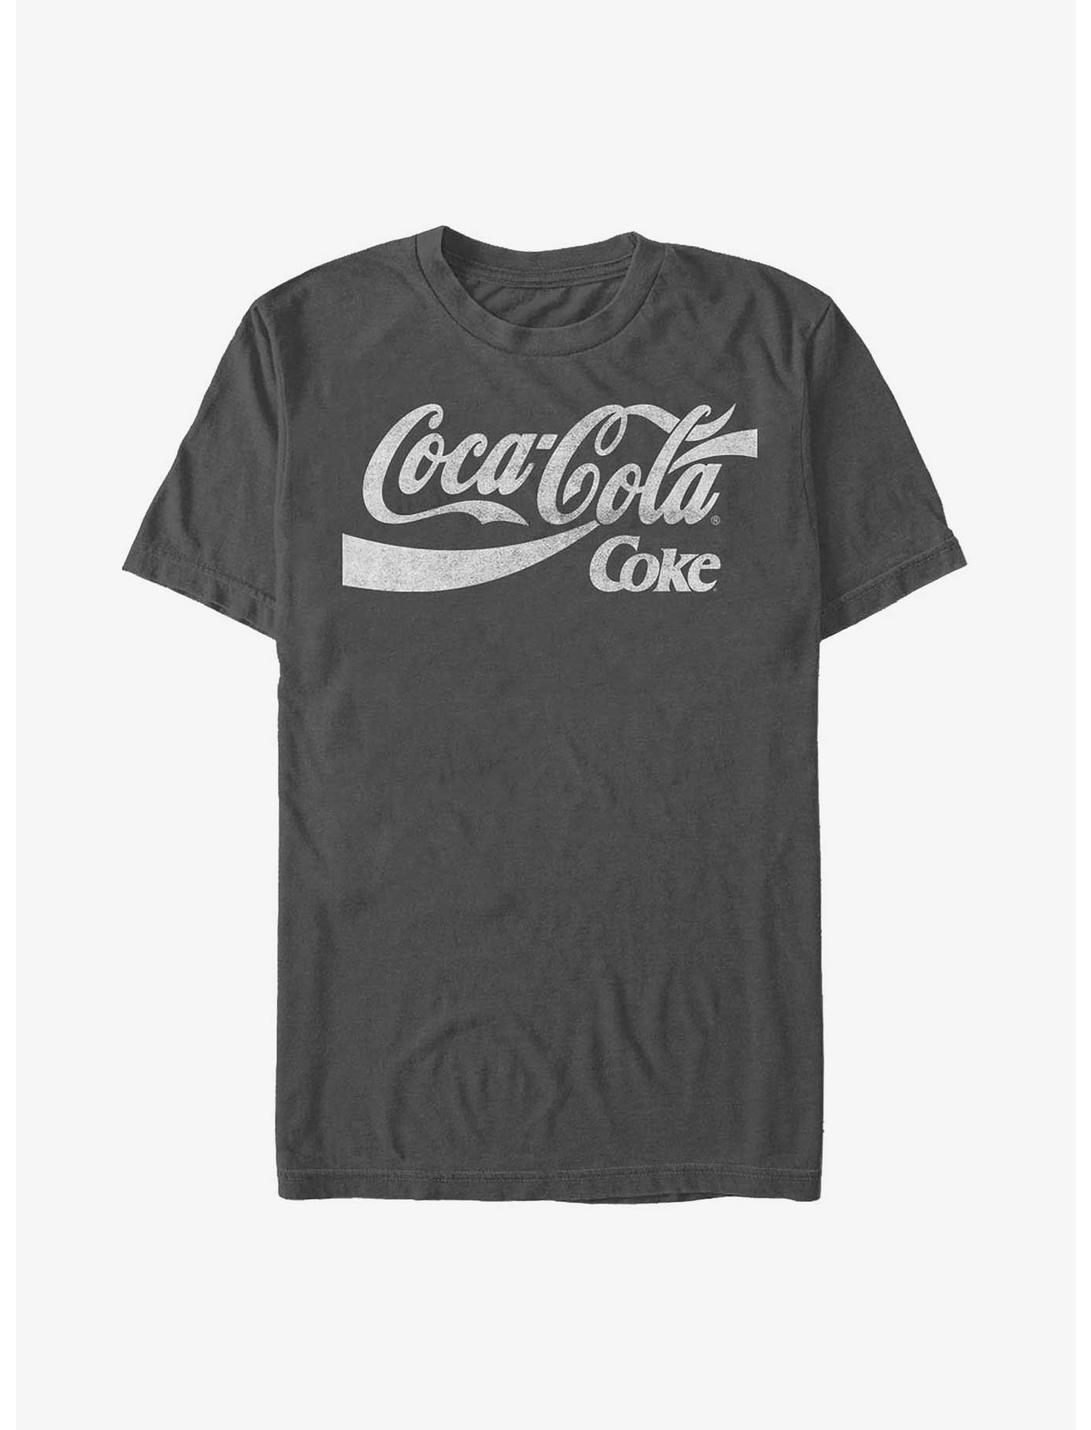 Coca-Cola Two Coke Logos T-Shirt, CHARCOAL, hi-res